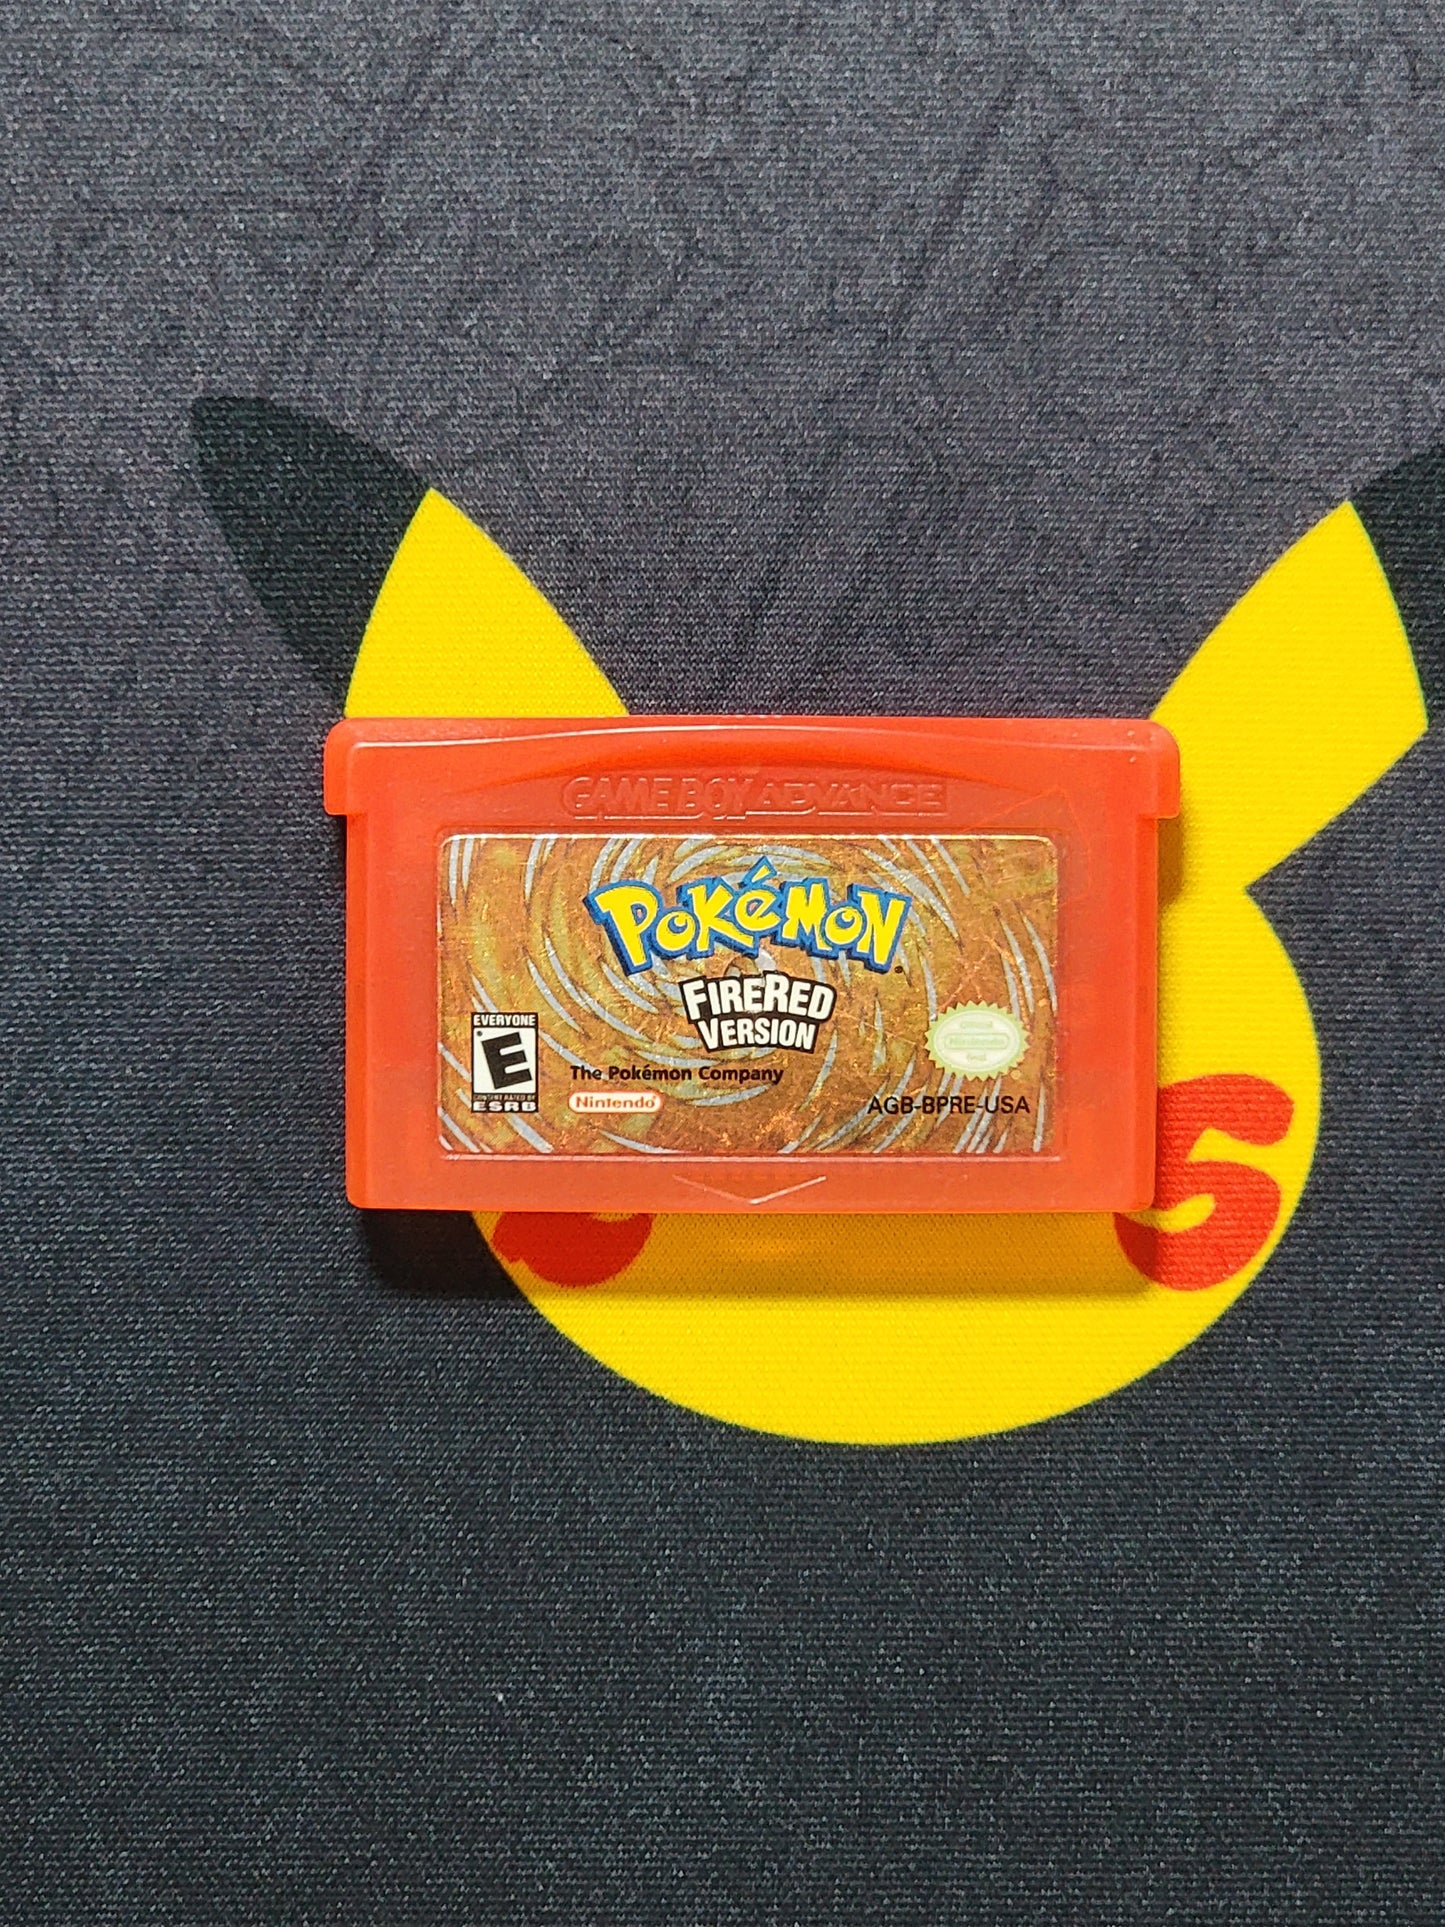 Pokémon FireRed Version